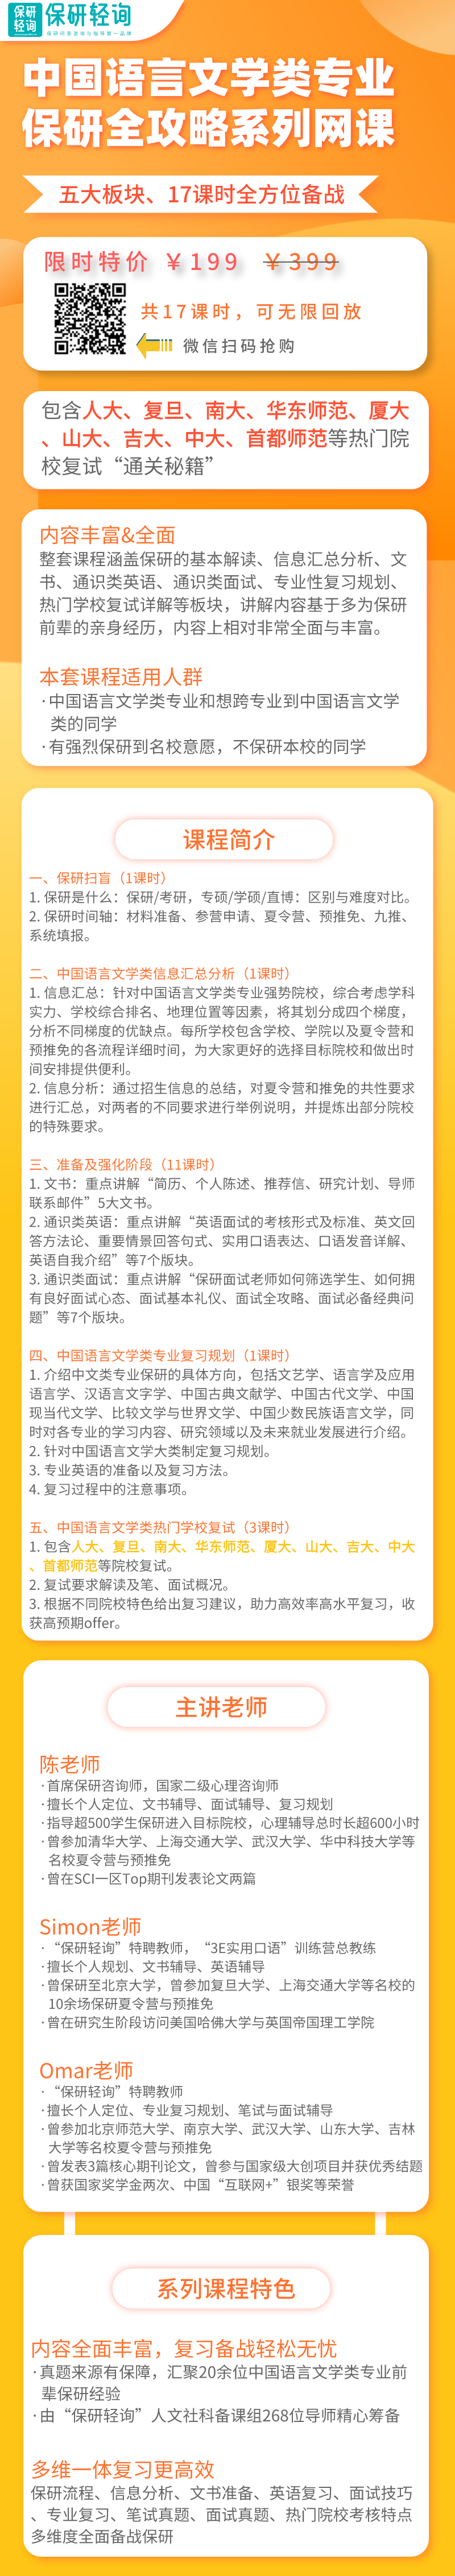 中国语言文学类专业保研全攻略网课_自定义px_2021-07-18-0.png